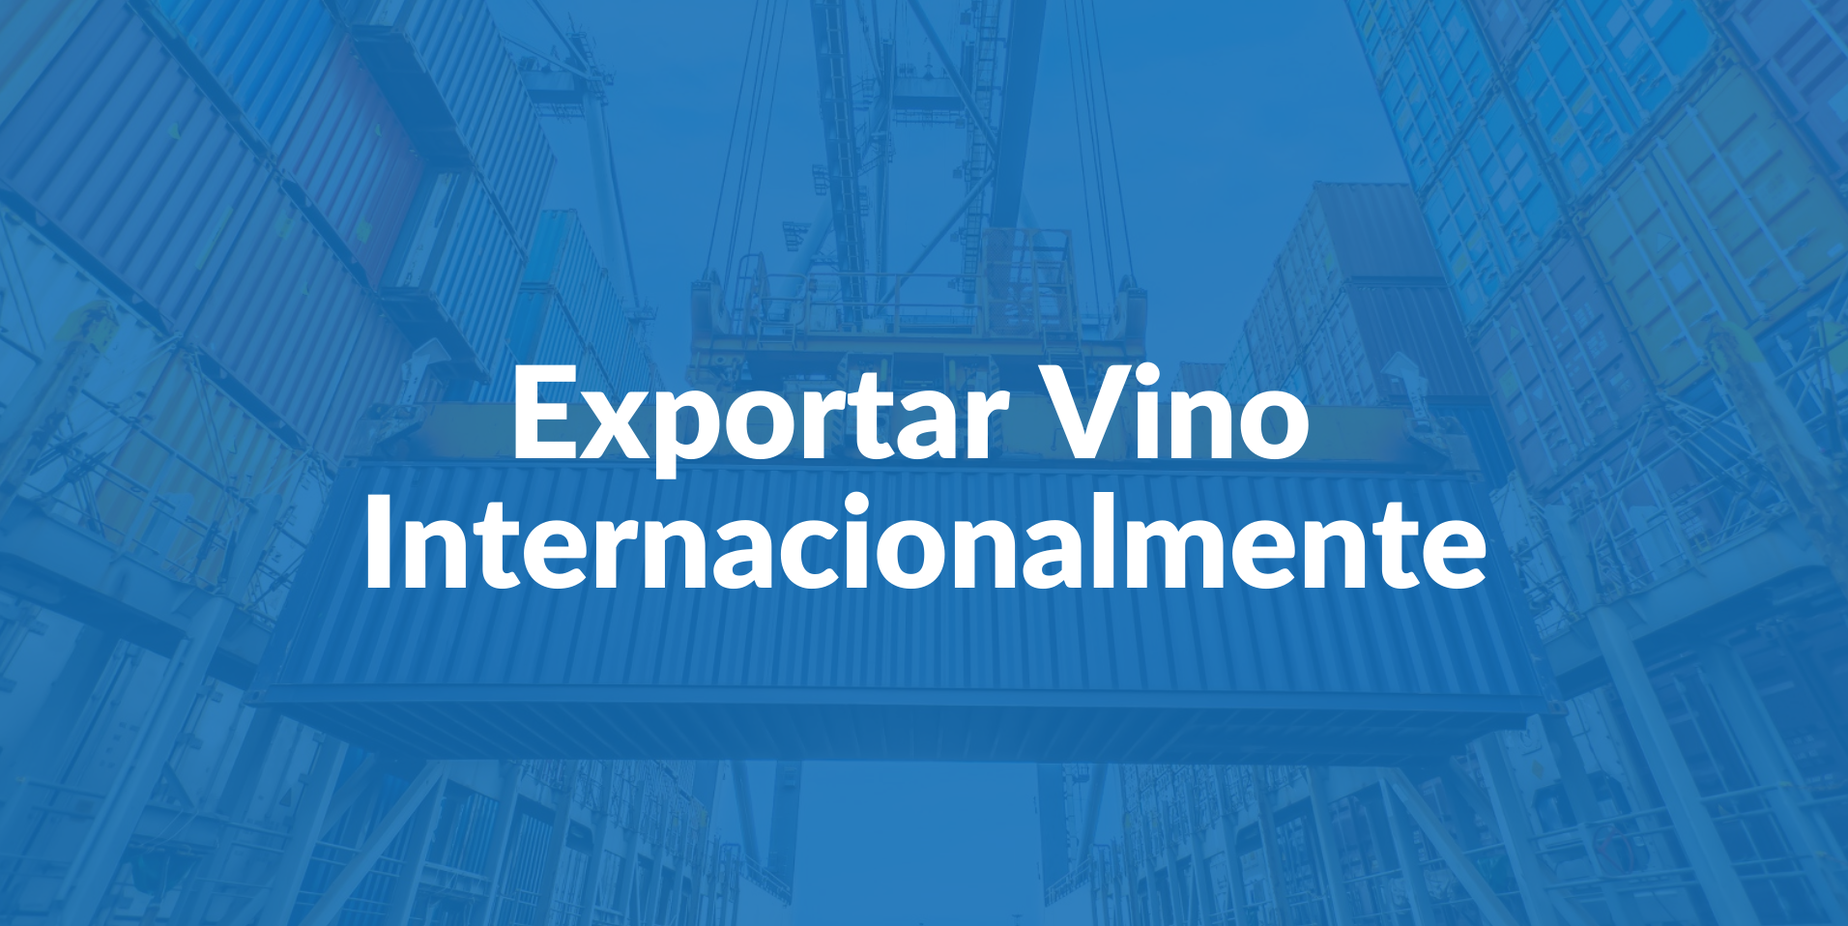 Cómo exportar vino internacionalmente